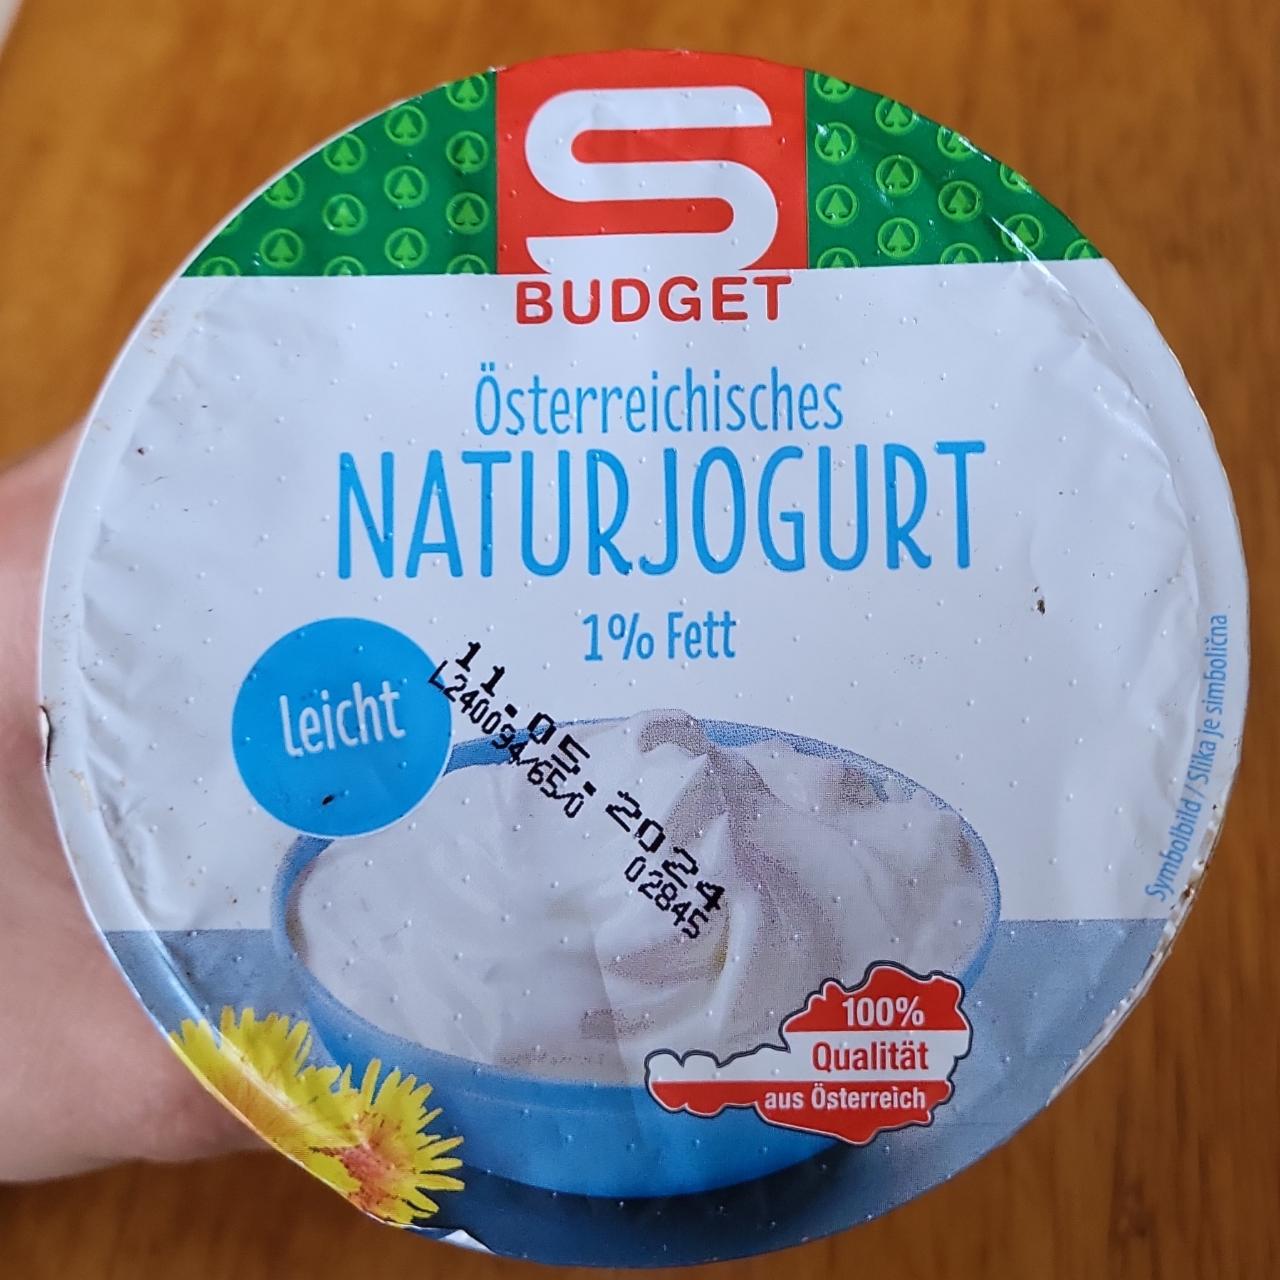 Fotografie - Österreichisches naturjogurt 1% Fett S Budget